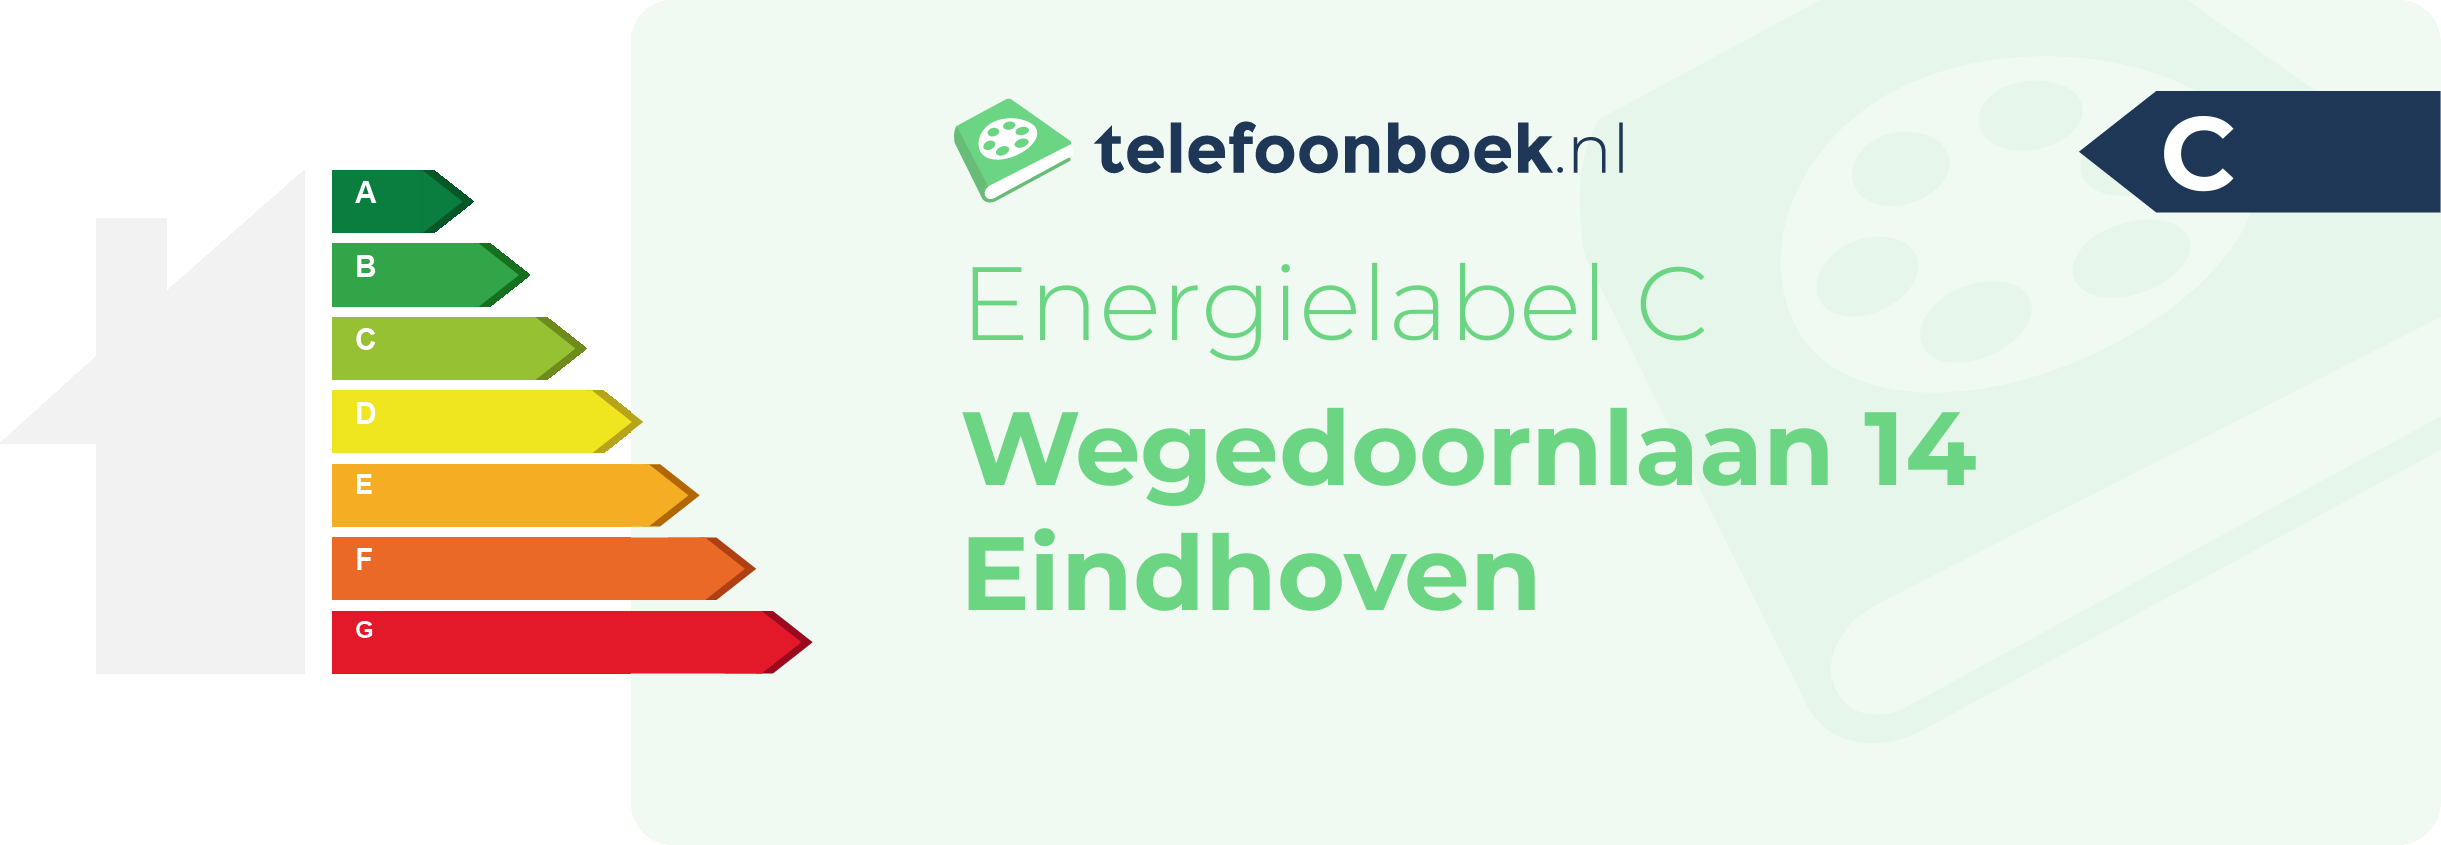 Energielabel Wegedoornlaan 14 Eindhoven